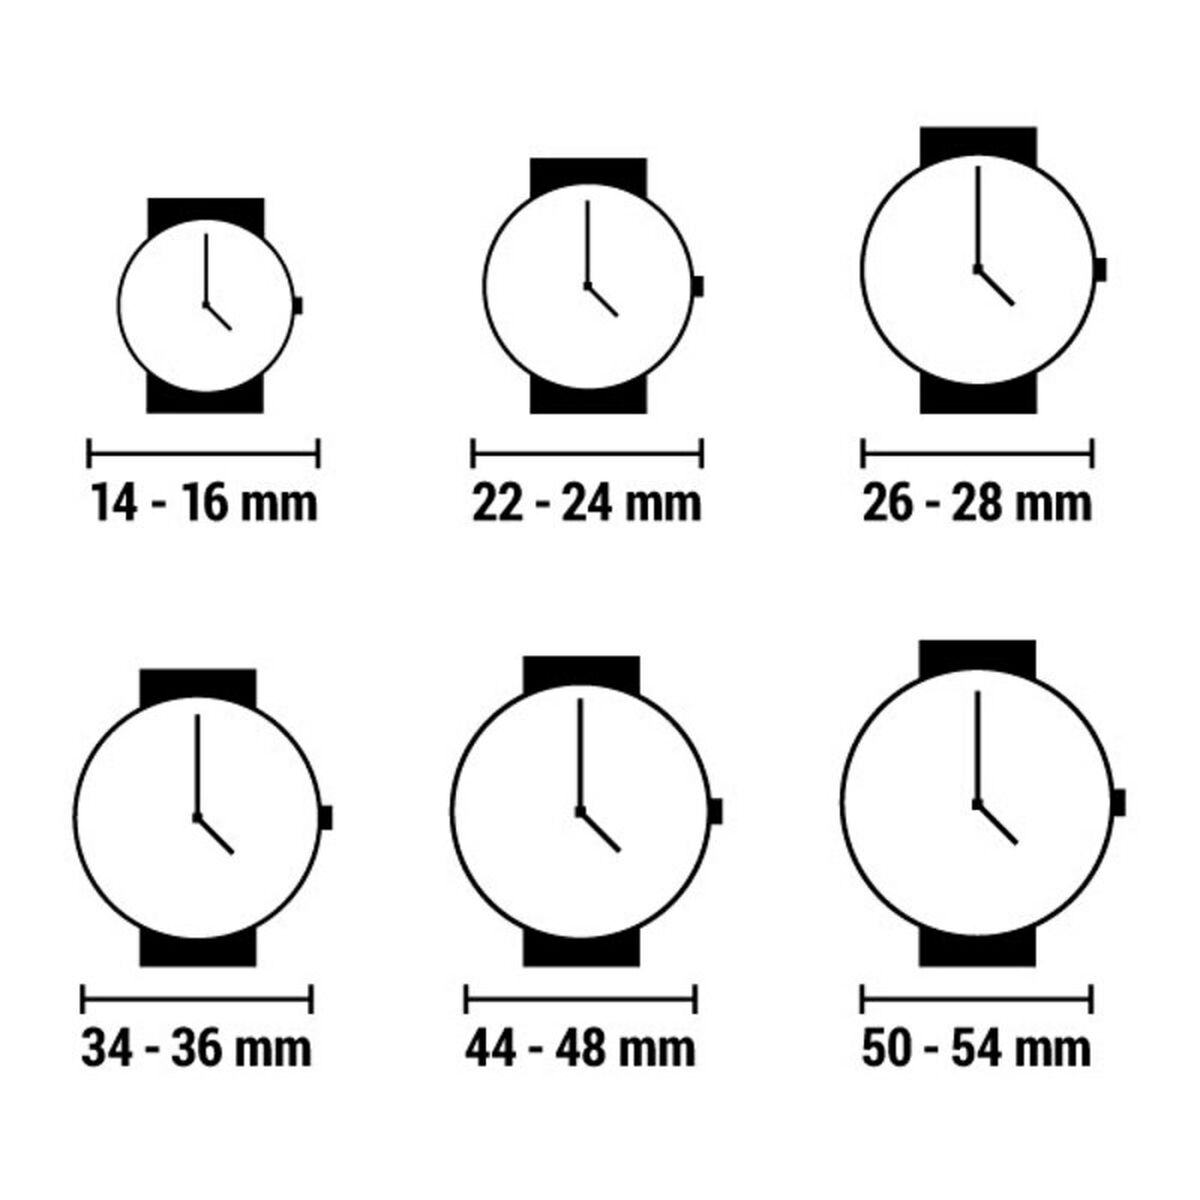 Horloge Dames Justina 21985 (Ø 32 mm)